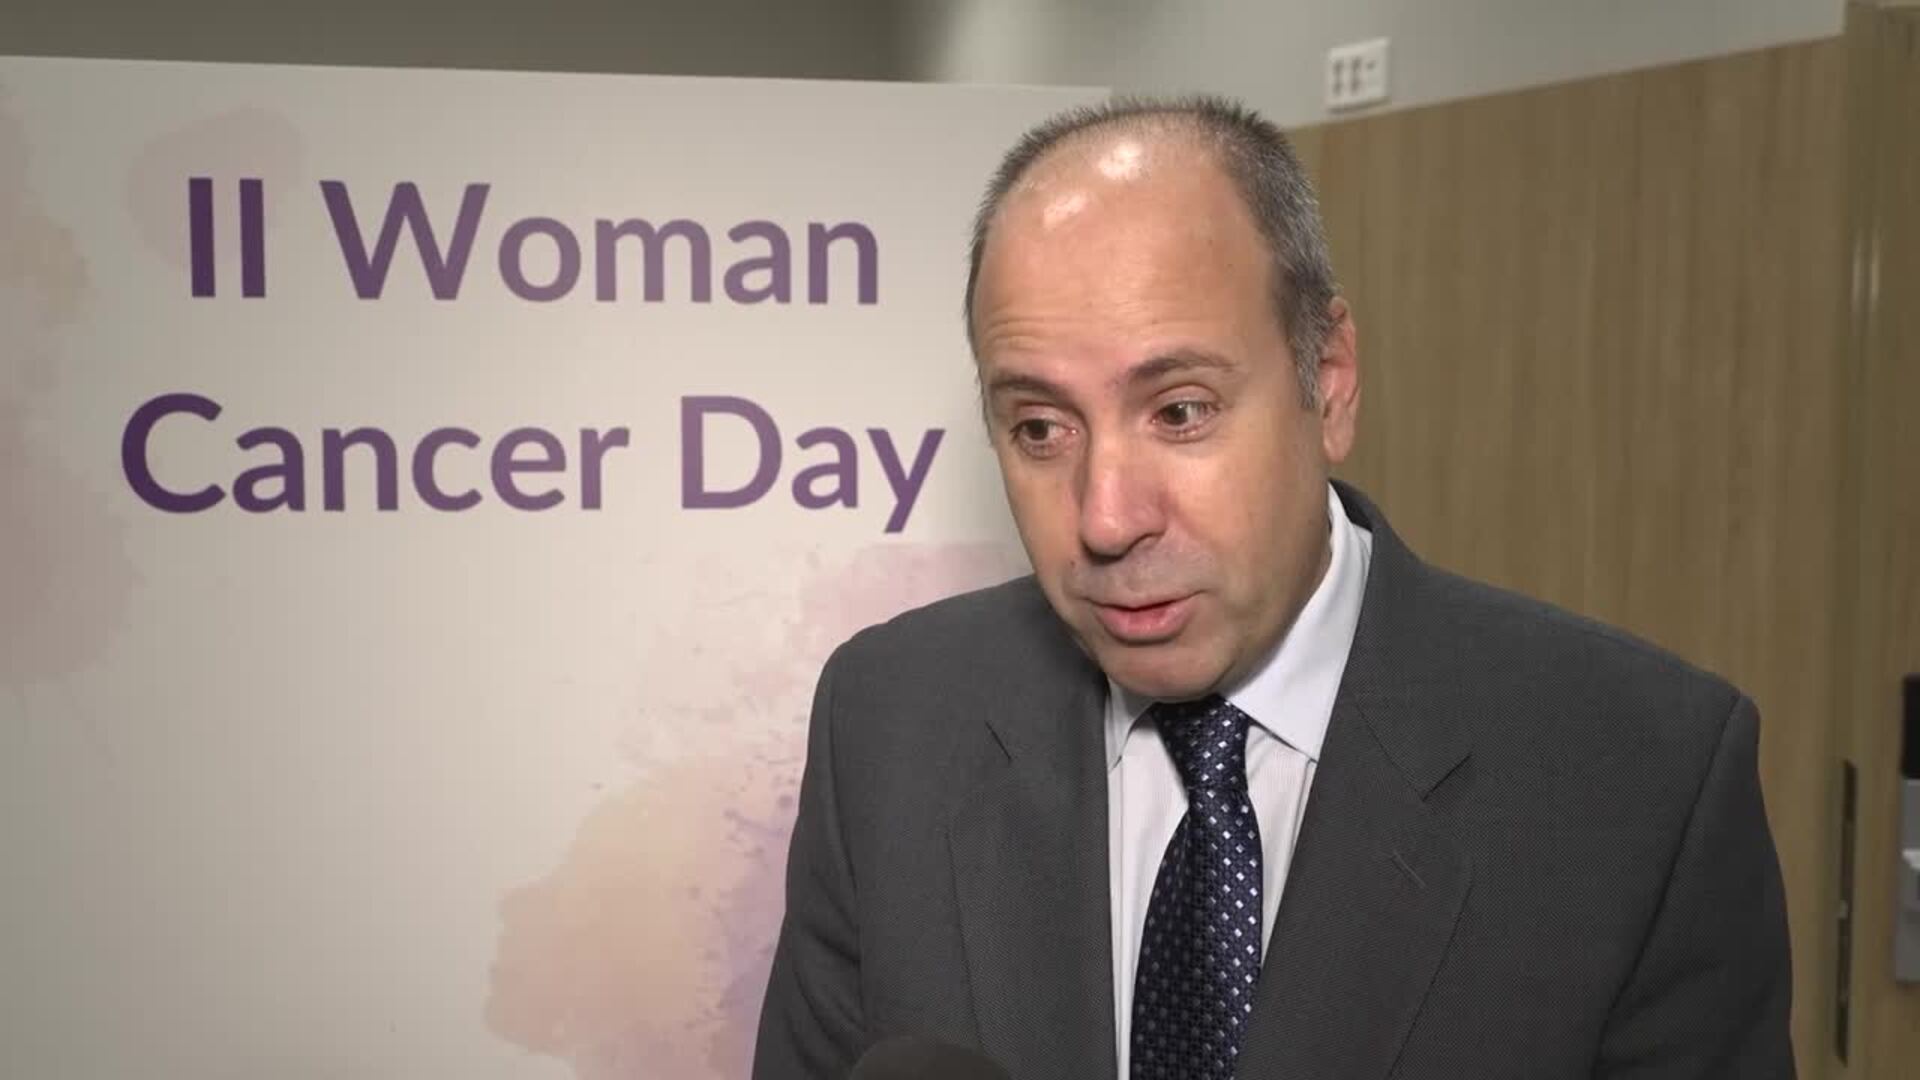 Administración, sanitarios, y pacientes se unen para mejorar la asistencia del cáncer femenino